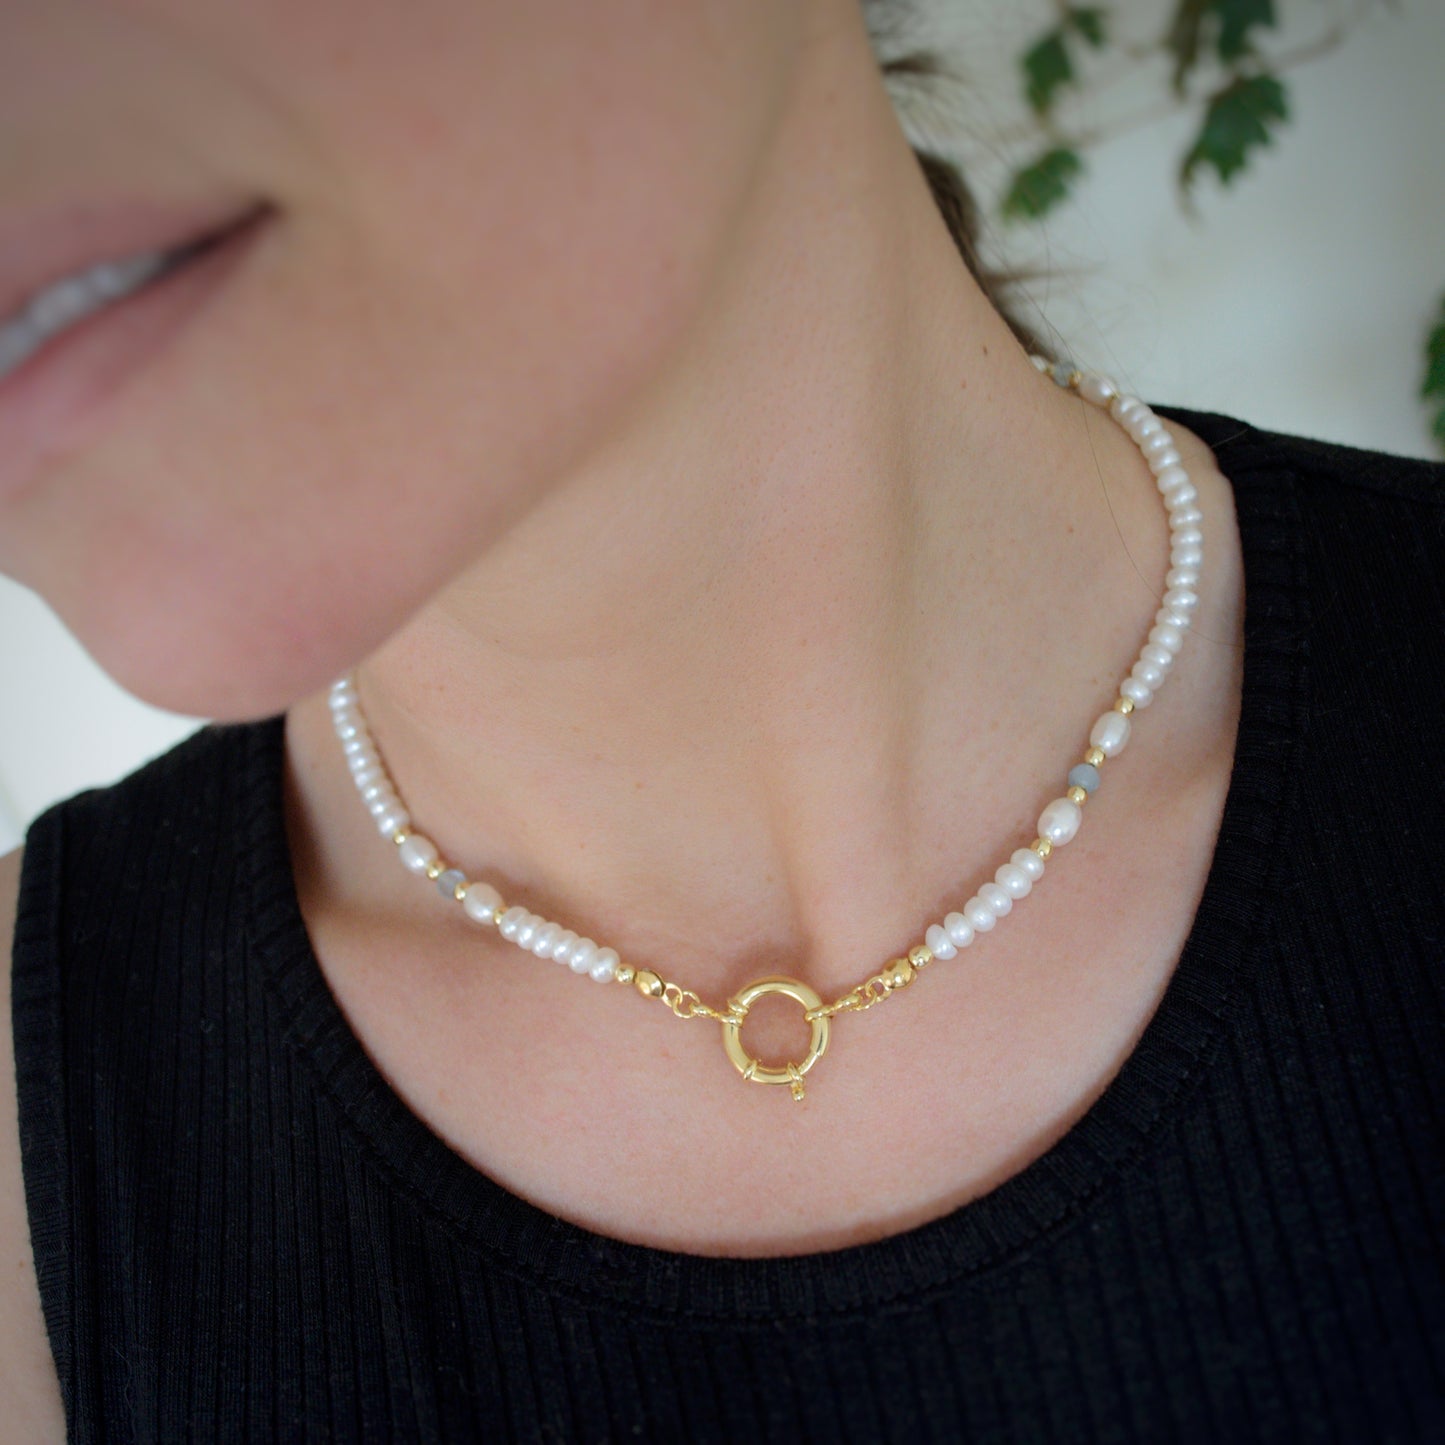 Aqua Pearls necklace